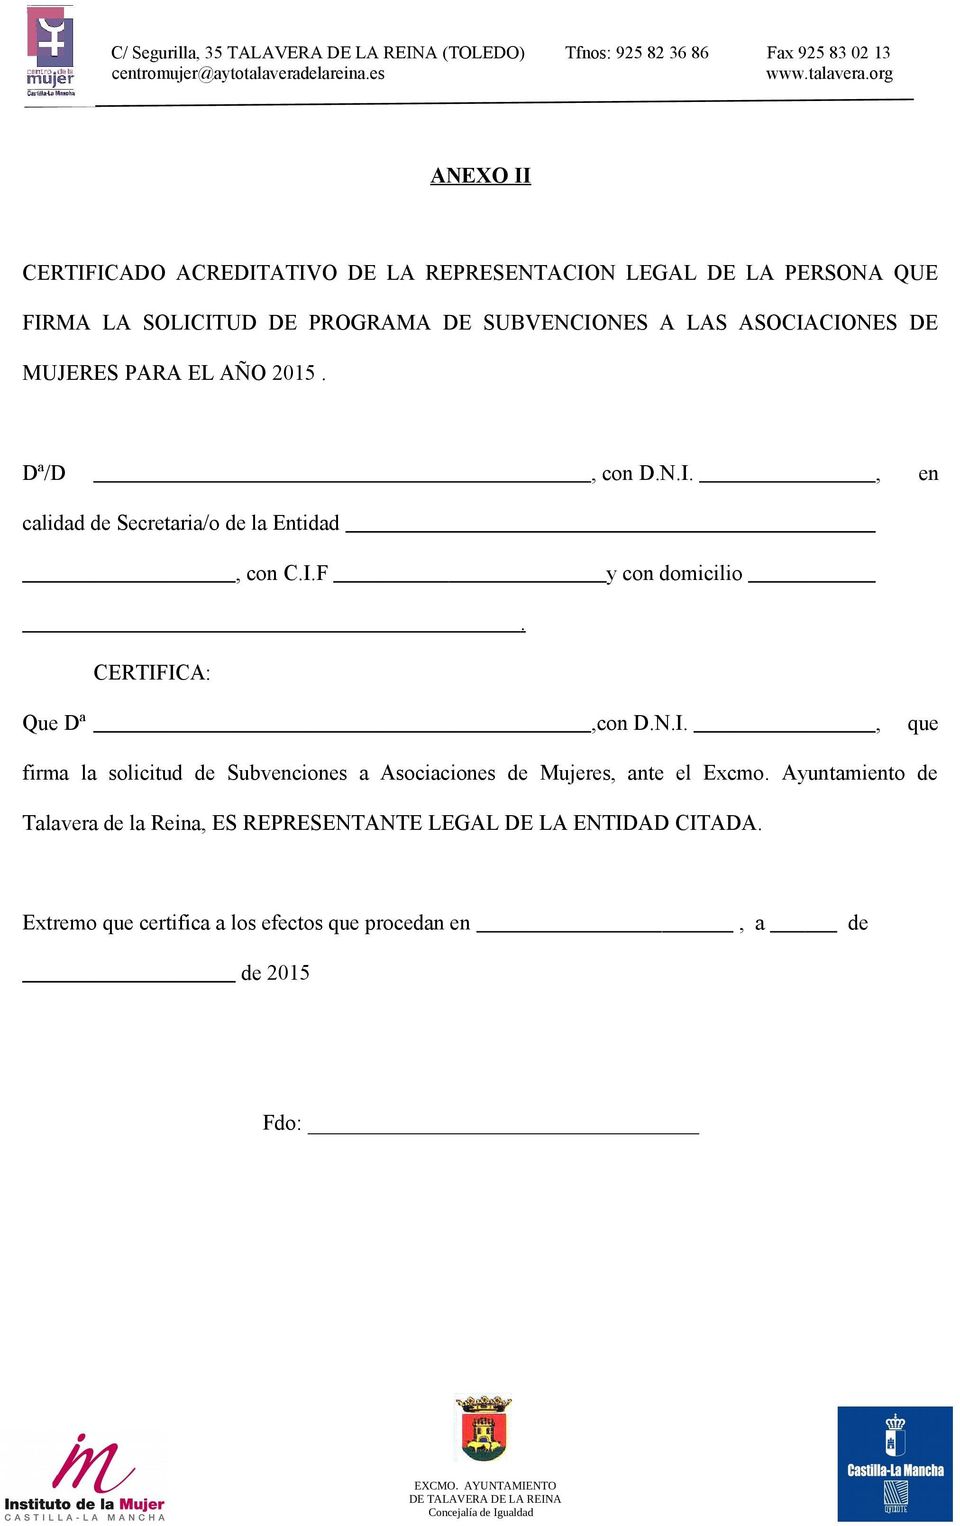 CERTIFICA: Que Dª,con D.N.I., que firma la solicitud de Subvenciones a Asociaciones de Mujeres, ante el Excmo.